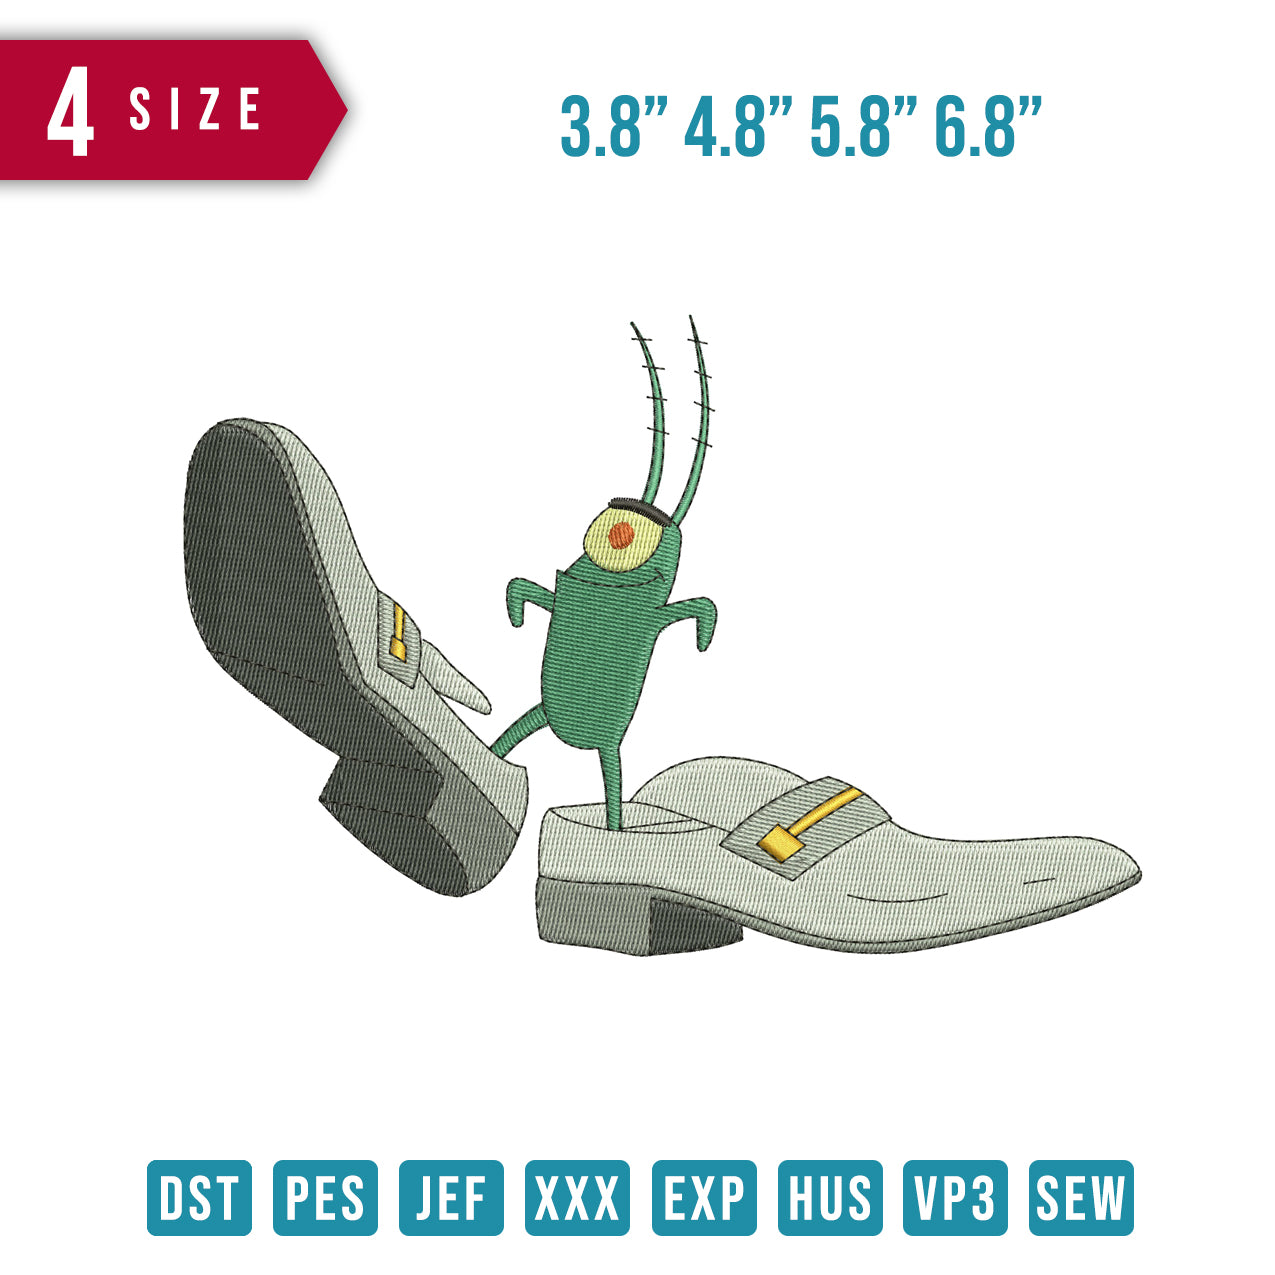 Plankton Big shoes